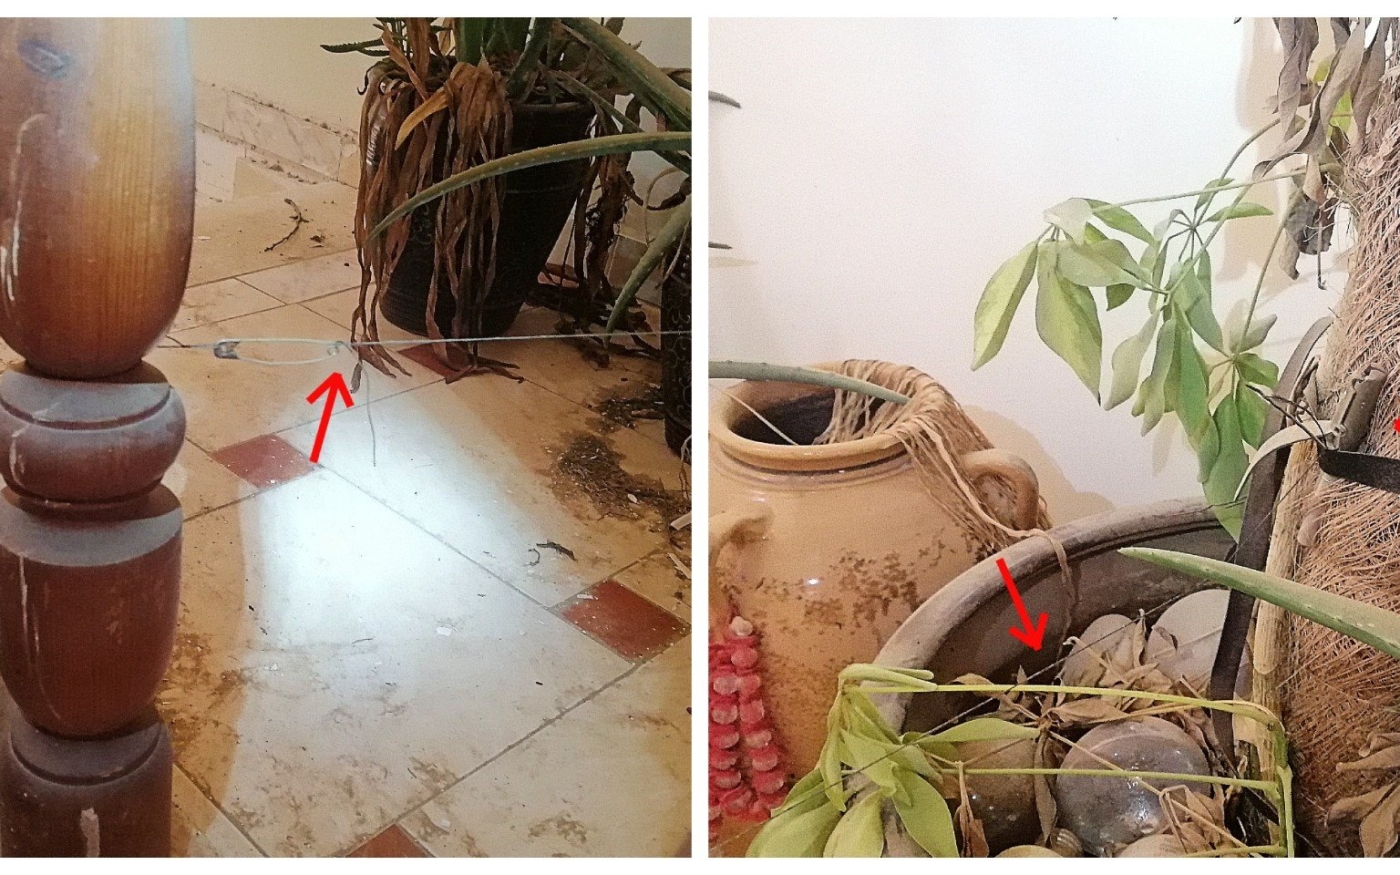 Dans un couloir, un fil de détente est tendu entre un escalier et une plante en pot, qui dissimule une grenade (photo fournie)